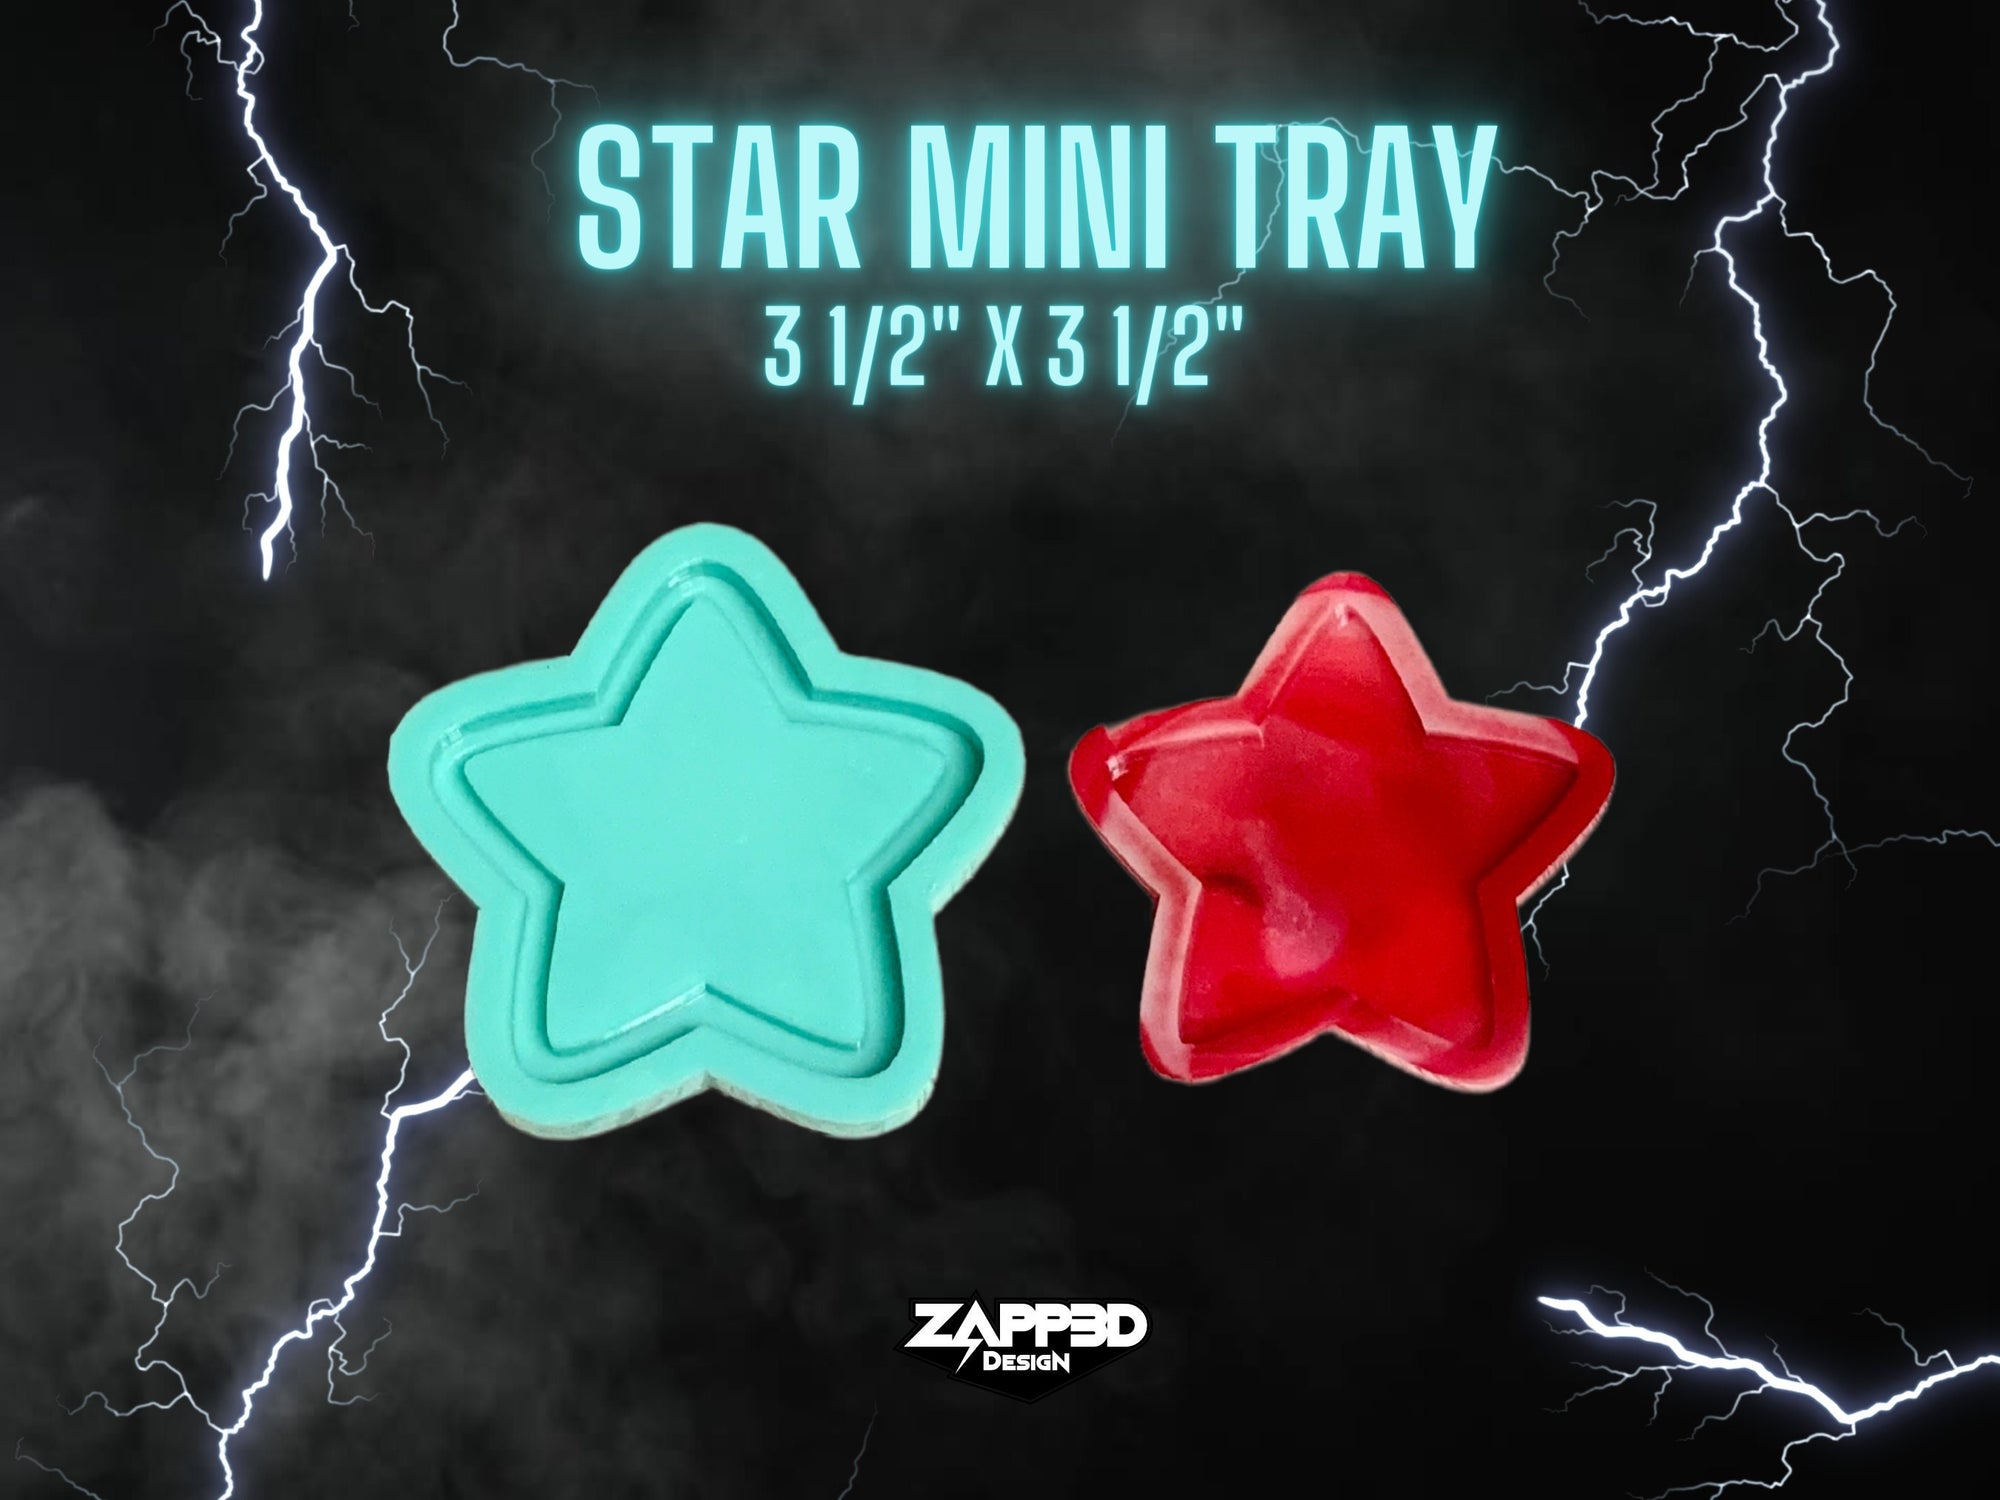 Star Mini Tray Molds, Small Tray Mold, Resin Mini Tray Mold, Shaker Mold, Mirror Mold, Star Mold, Tray Mold